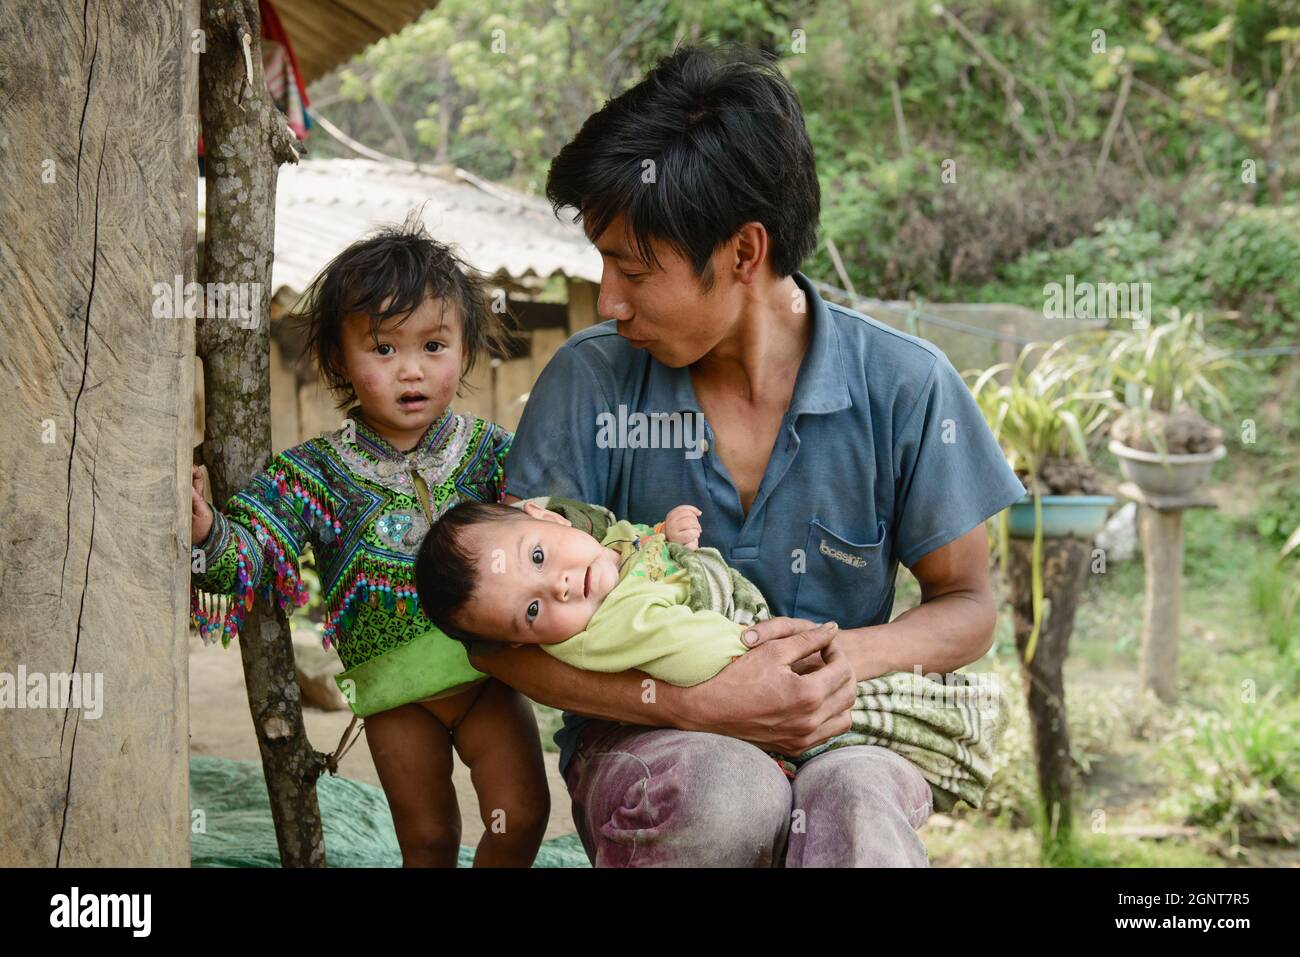 Sapa, Vietnam - 14. April 2016: Vietnamesischer Vater mit Kindern zu Hause, während seine Frau arbeitet. Vaterschaft in Asien, ländliche arme Gegend. Stockfoto